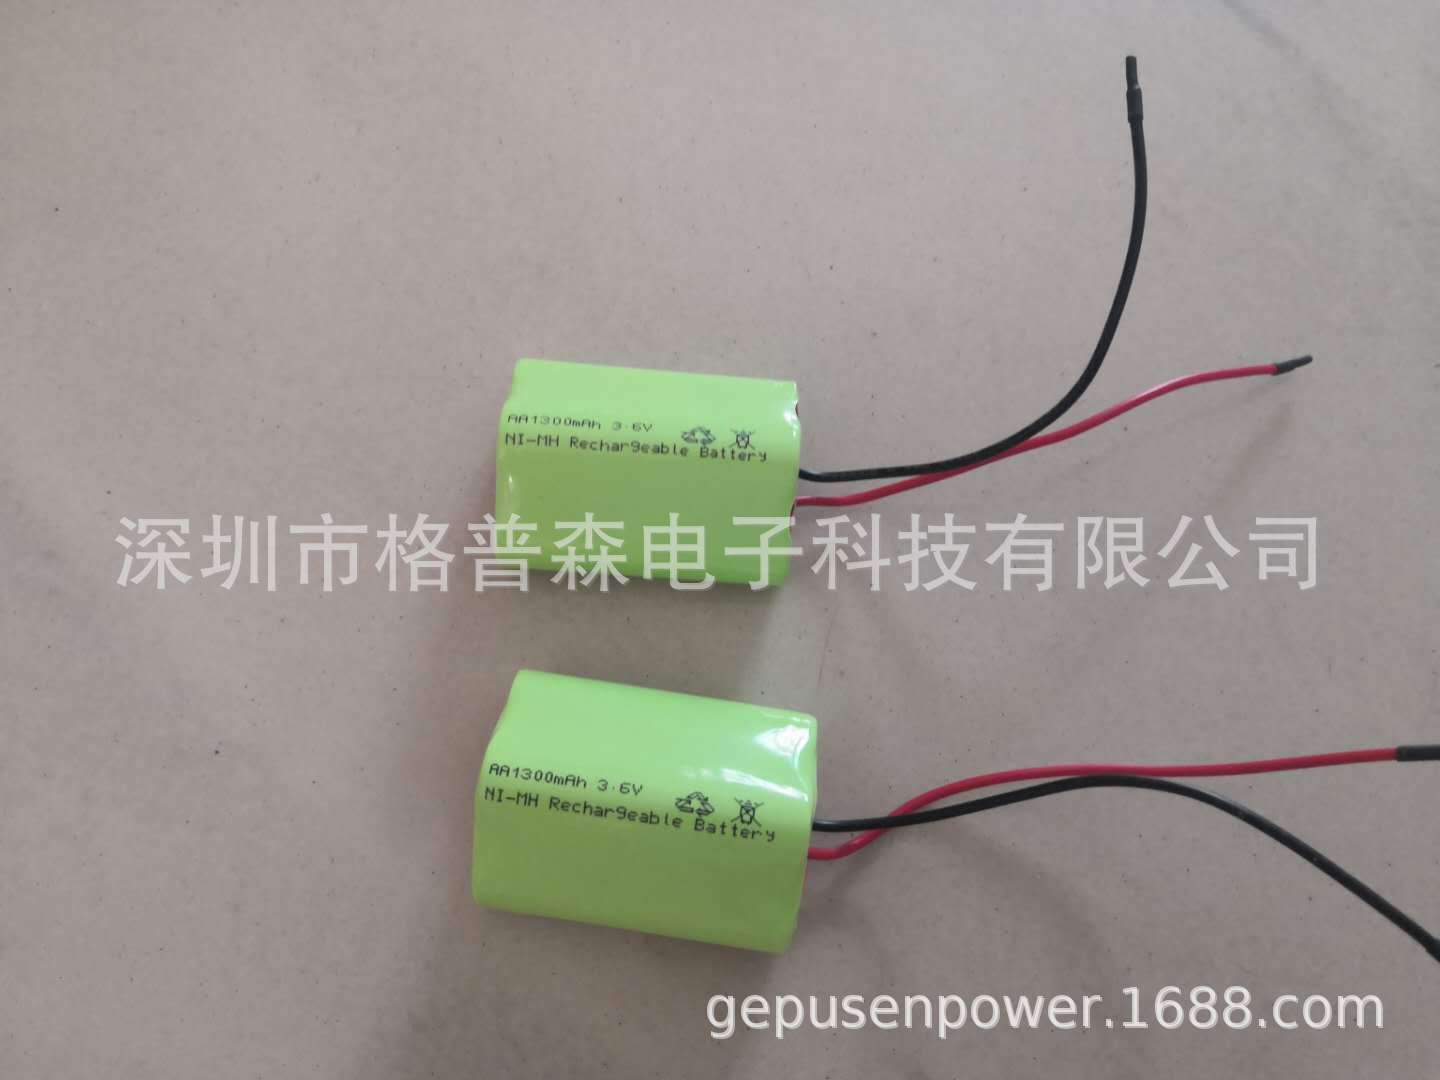 定制5号镍氢充电电池组NI-MH AA1300mAh 3.6V美容仪电池组